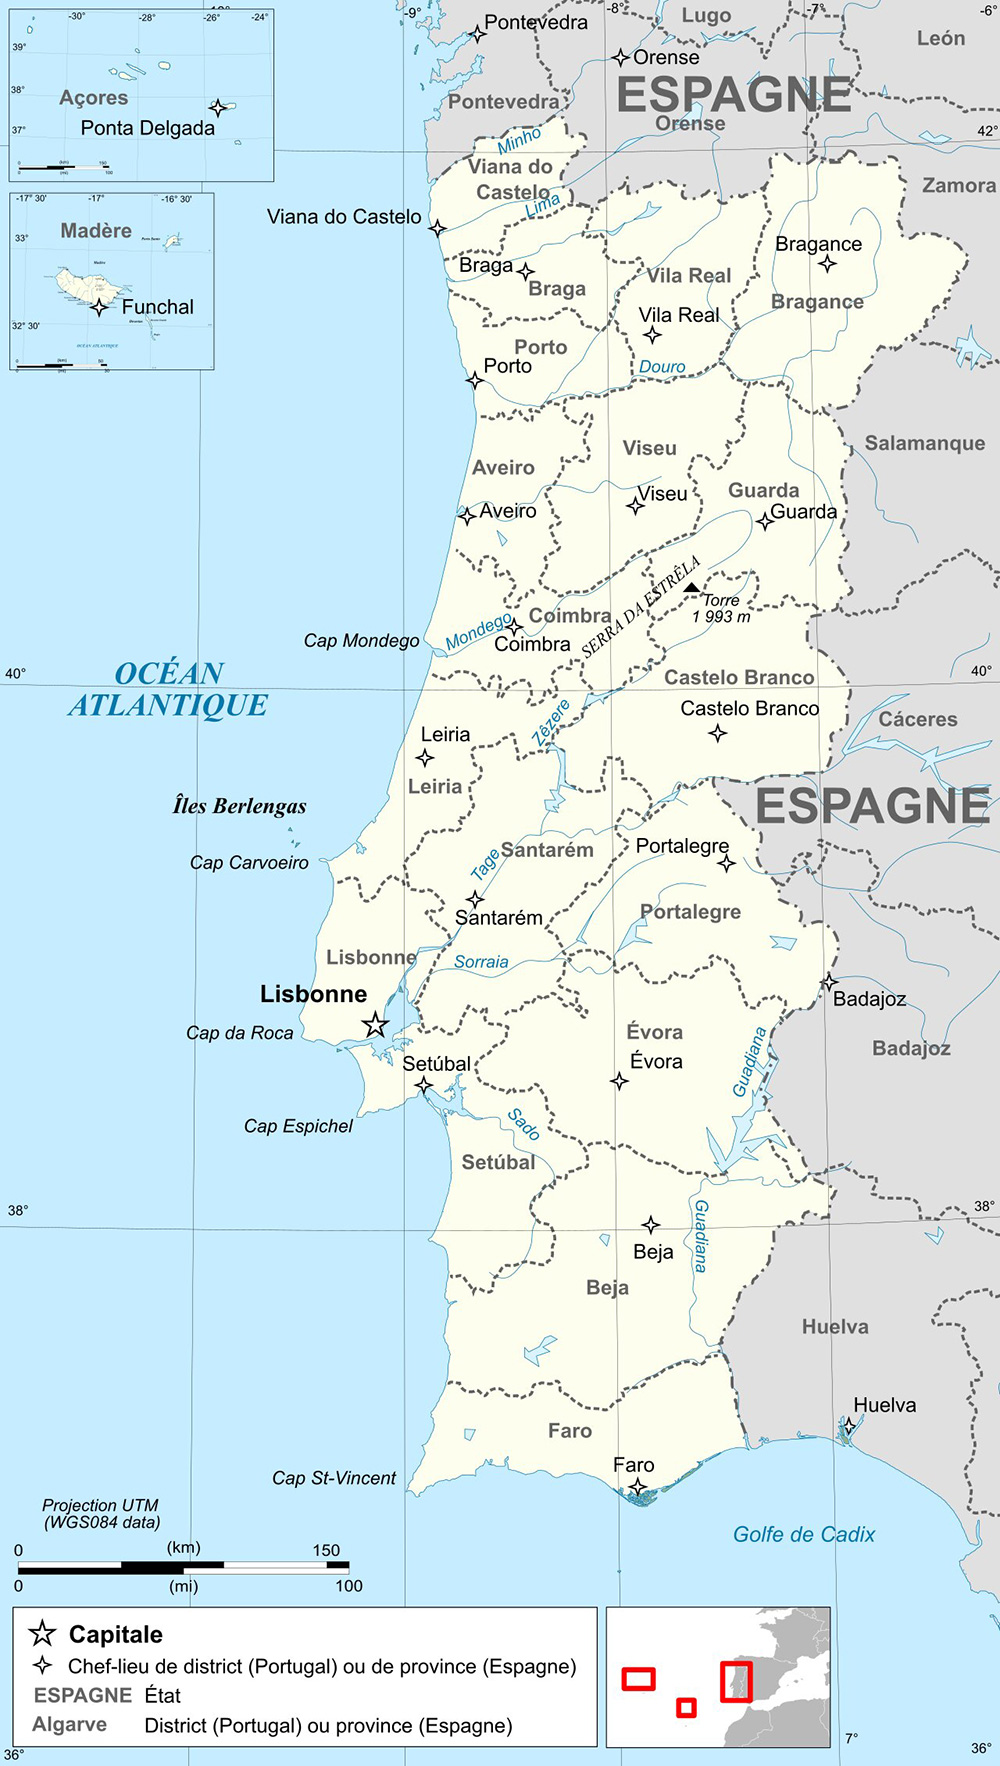 Mappa dettagliata con le città Portogallo